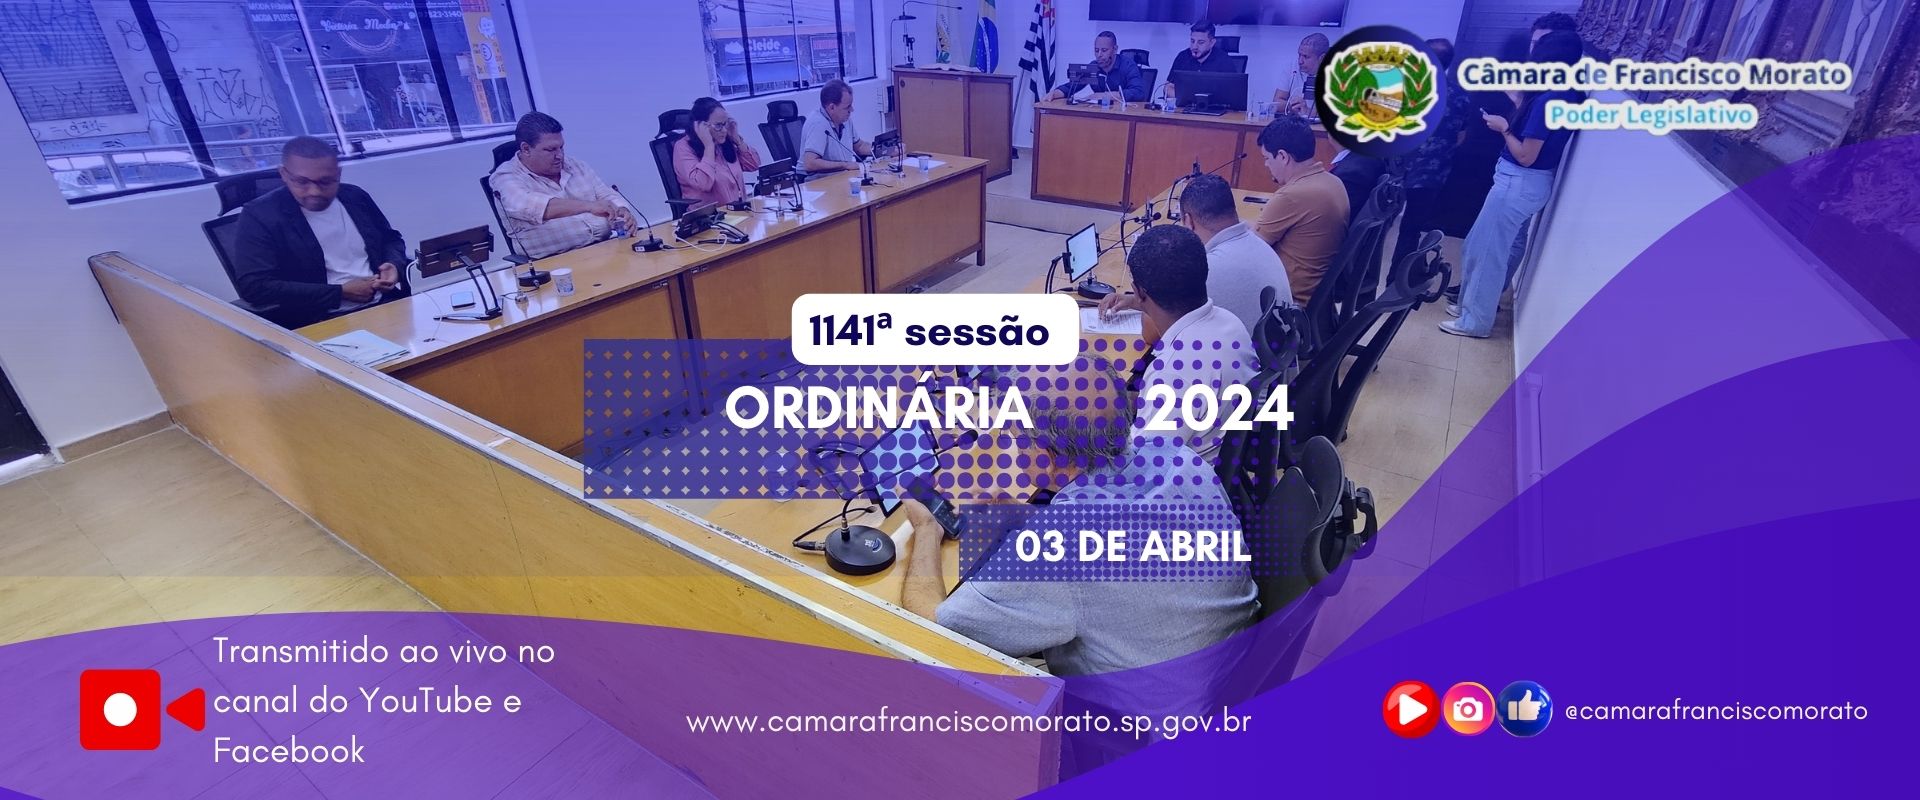 1141ª SESSÃO ORDINÁRIA 2024